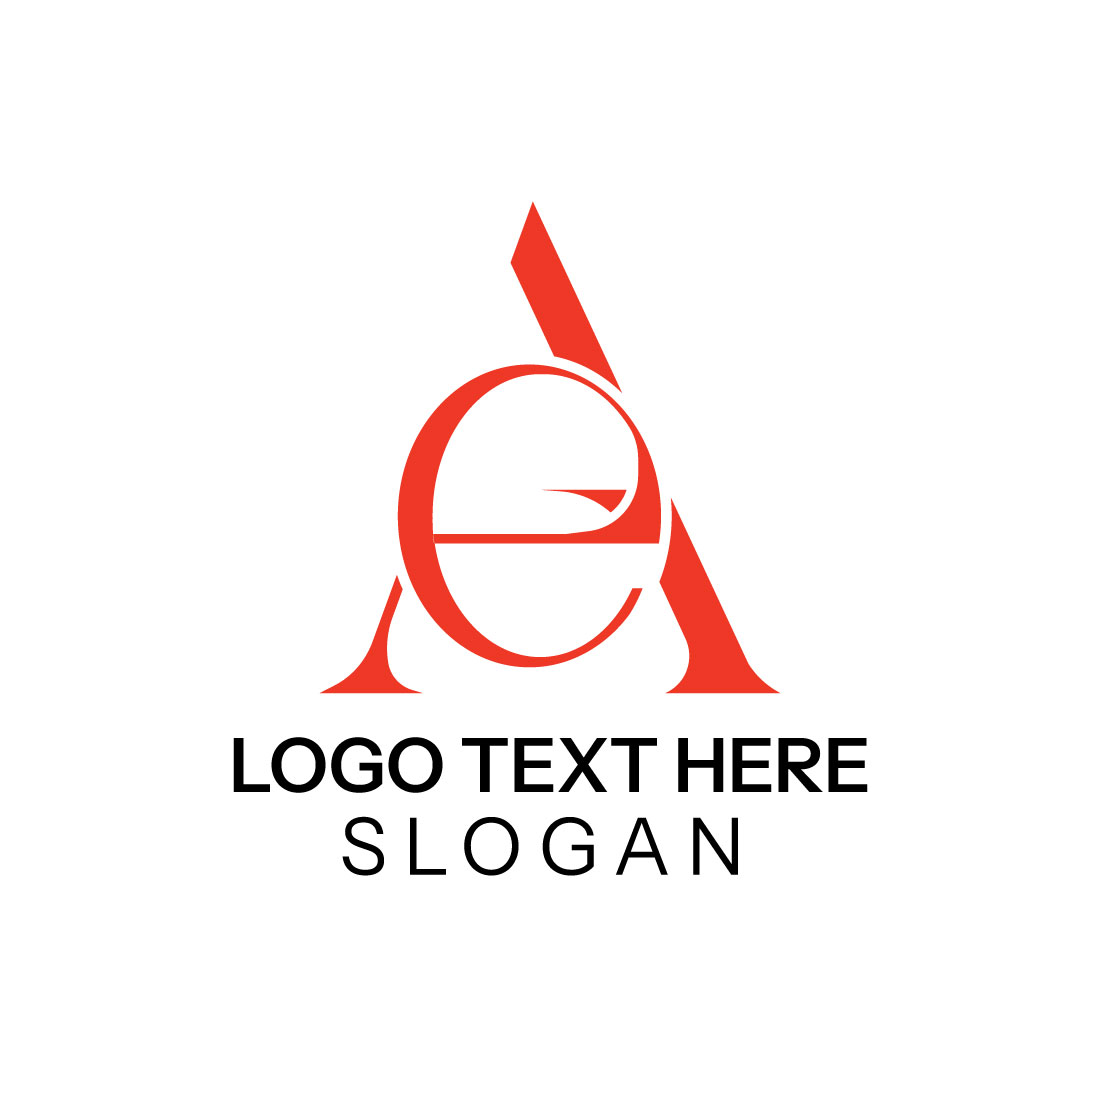 A E Letter Logo Design cover image.